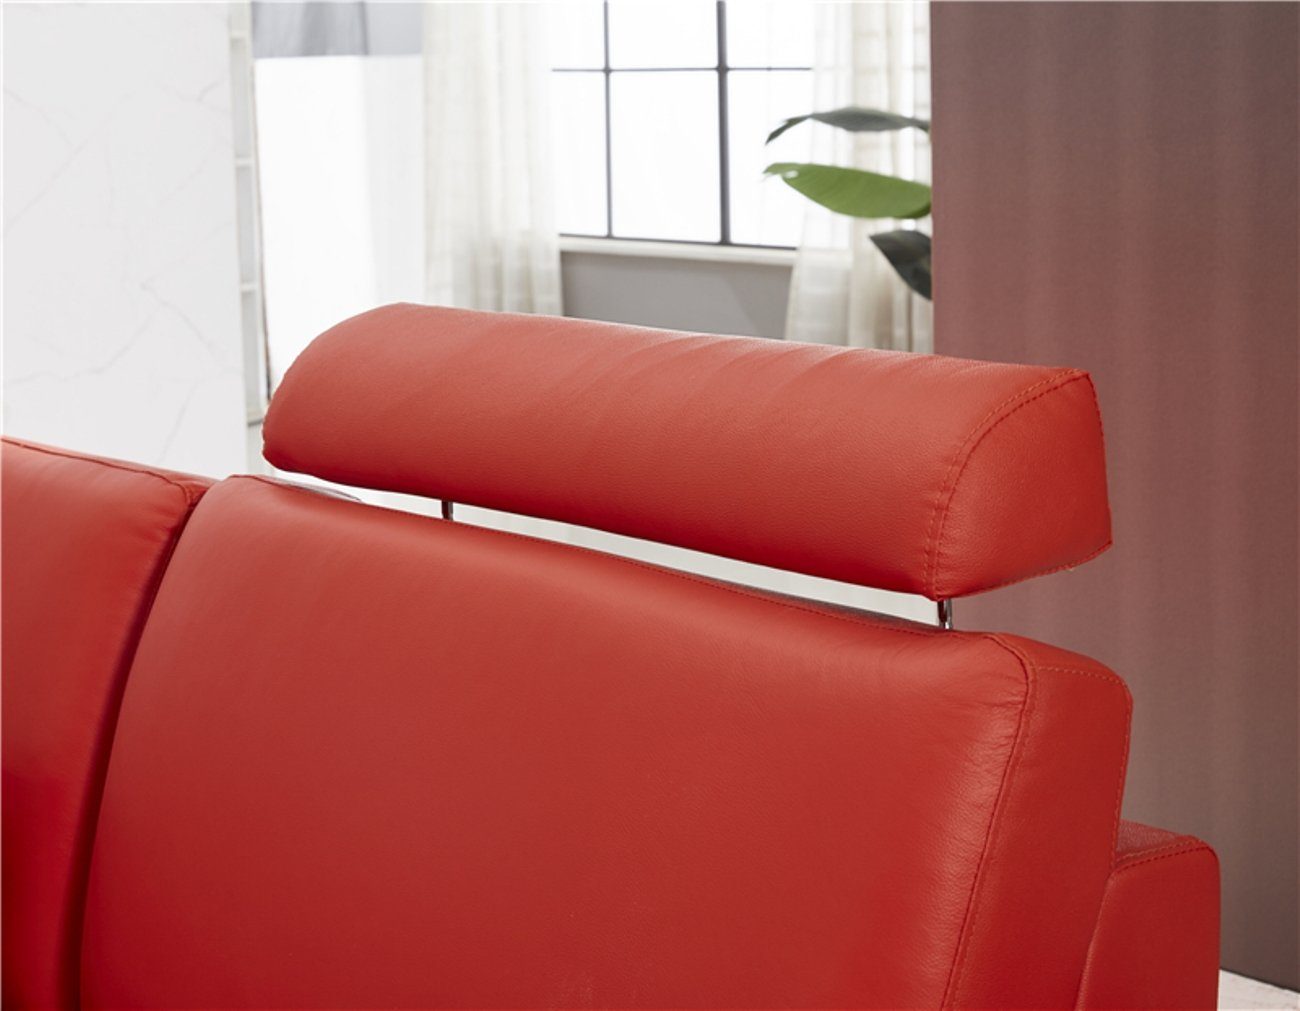 Couchen Couch JVmoebel Ecksofa, Eck Polster Design Sitz Luxus Sofa Garnitur Leder